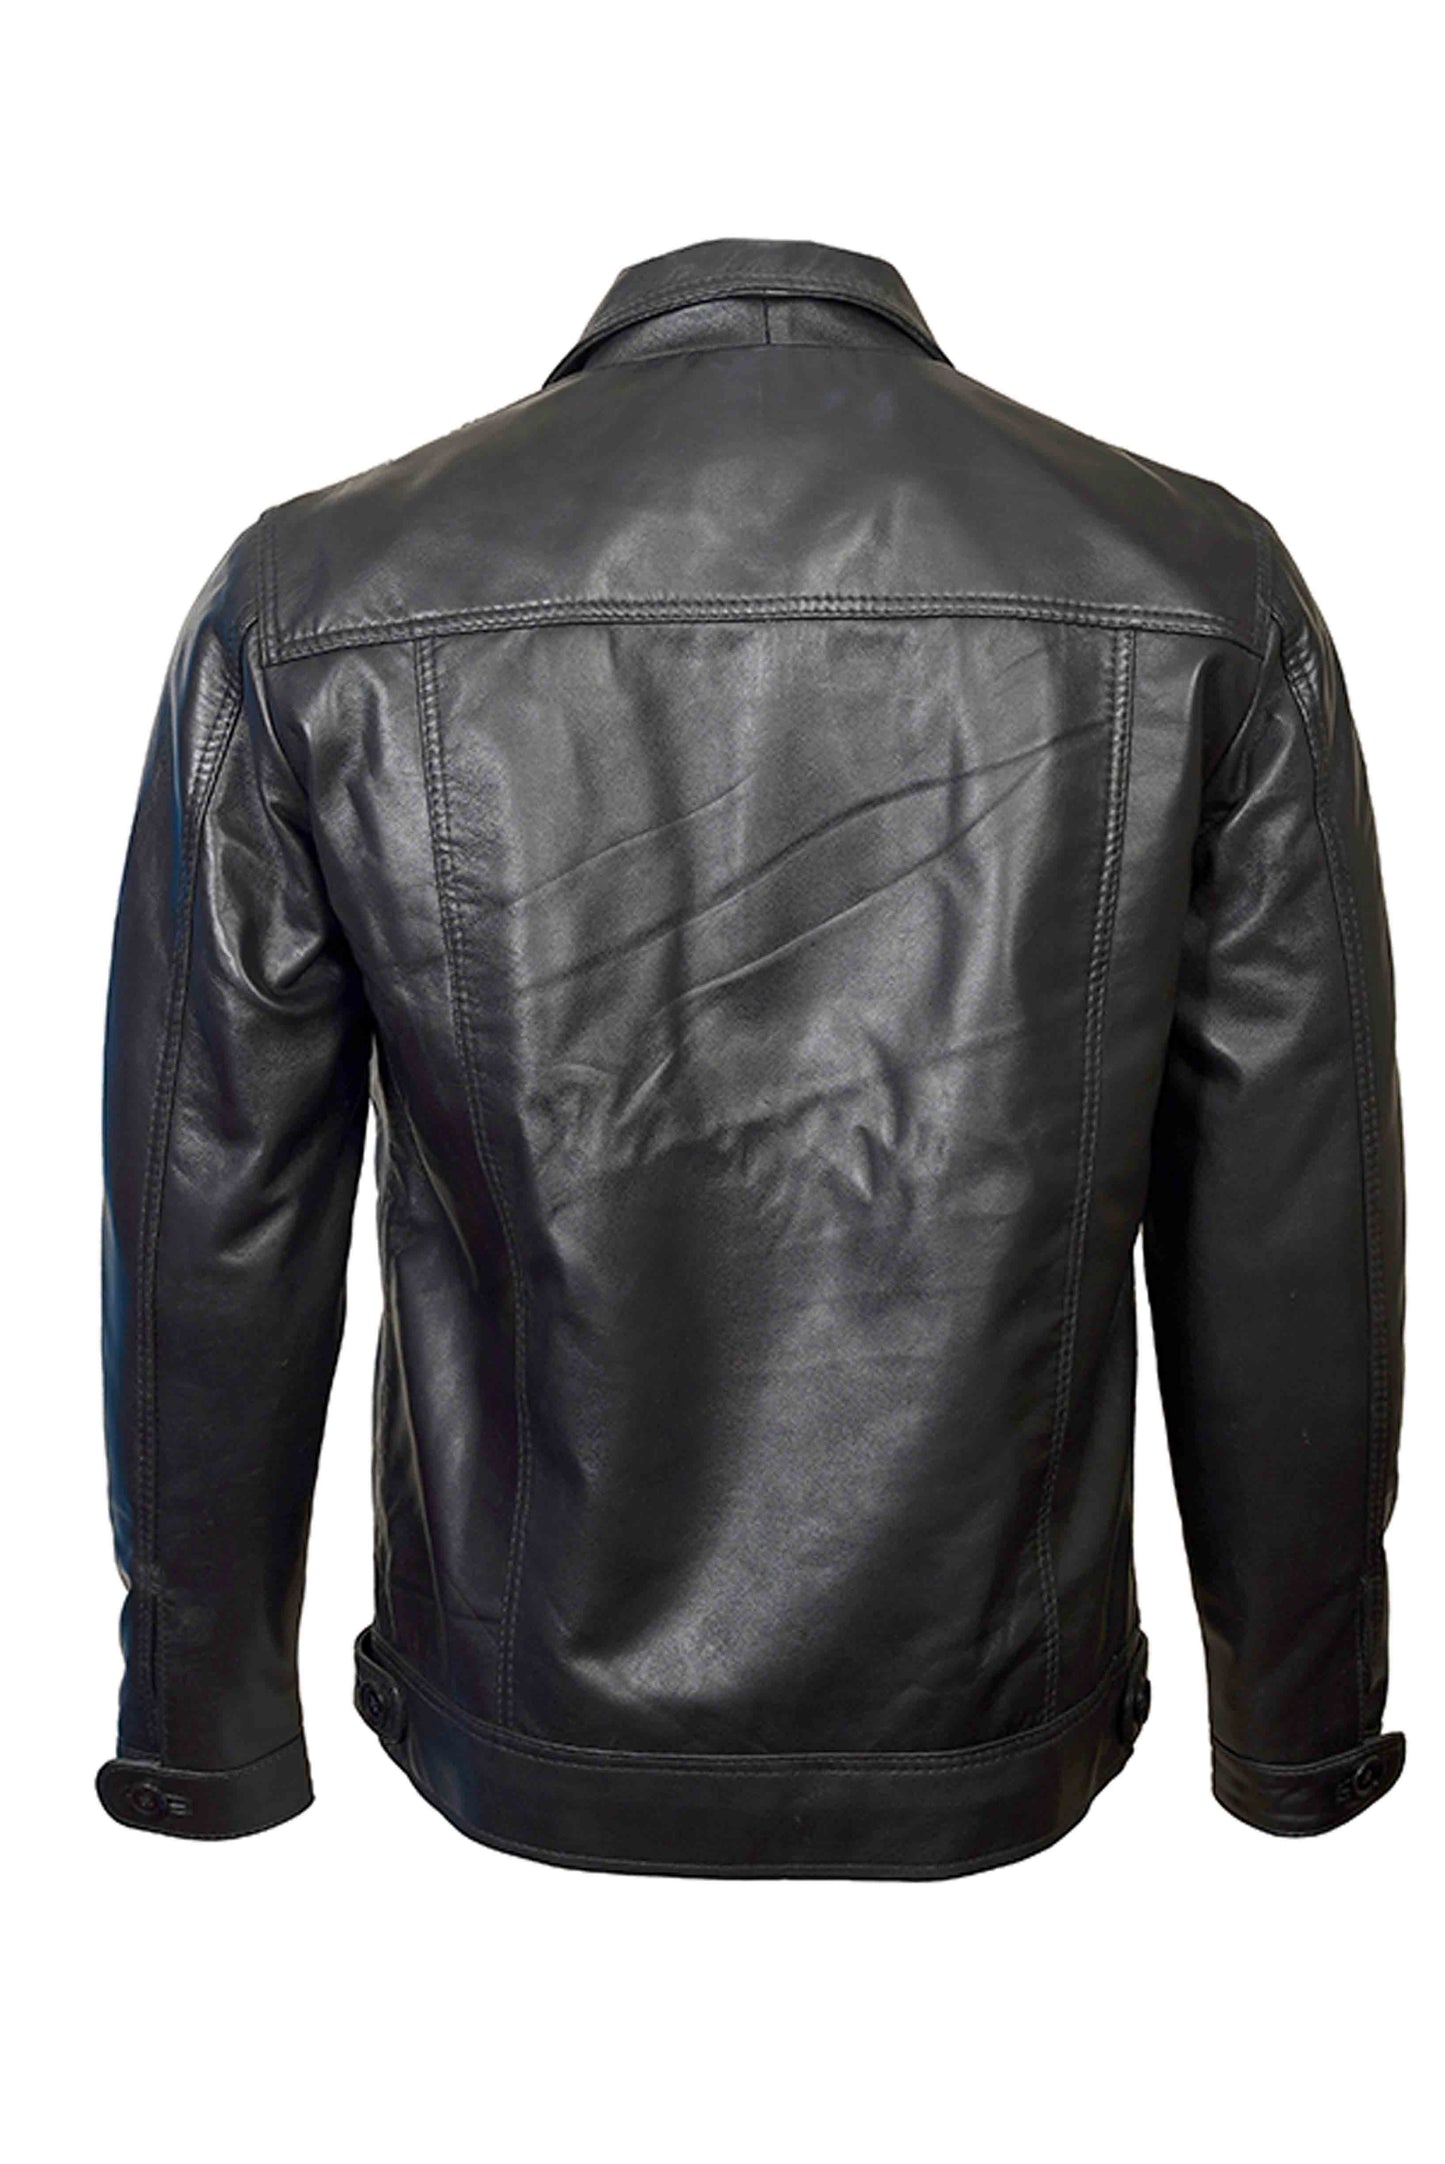 Buy Best Fashion Black Leather Jacket